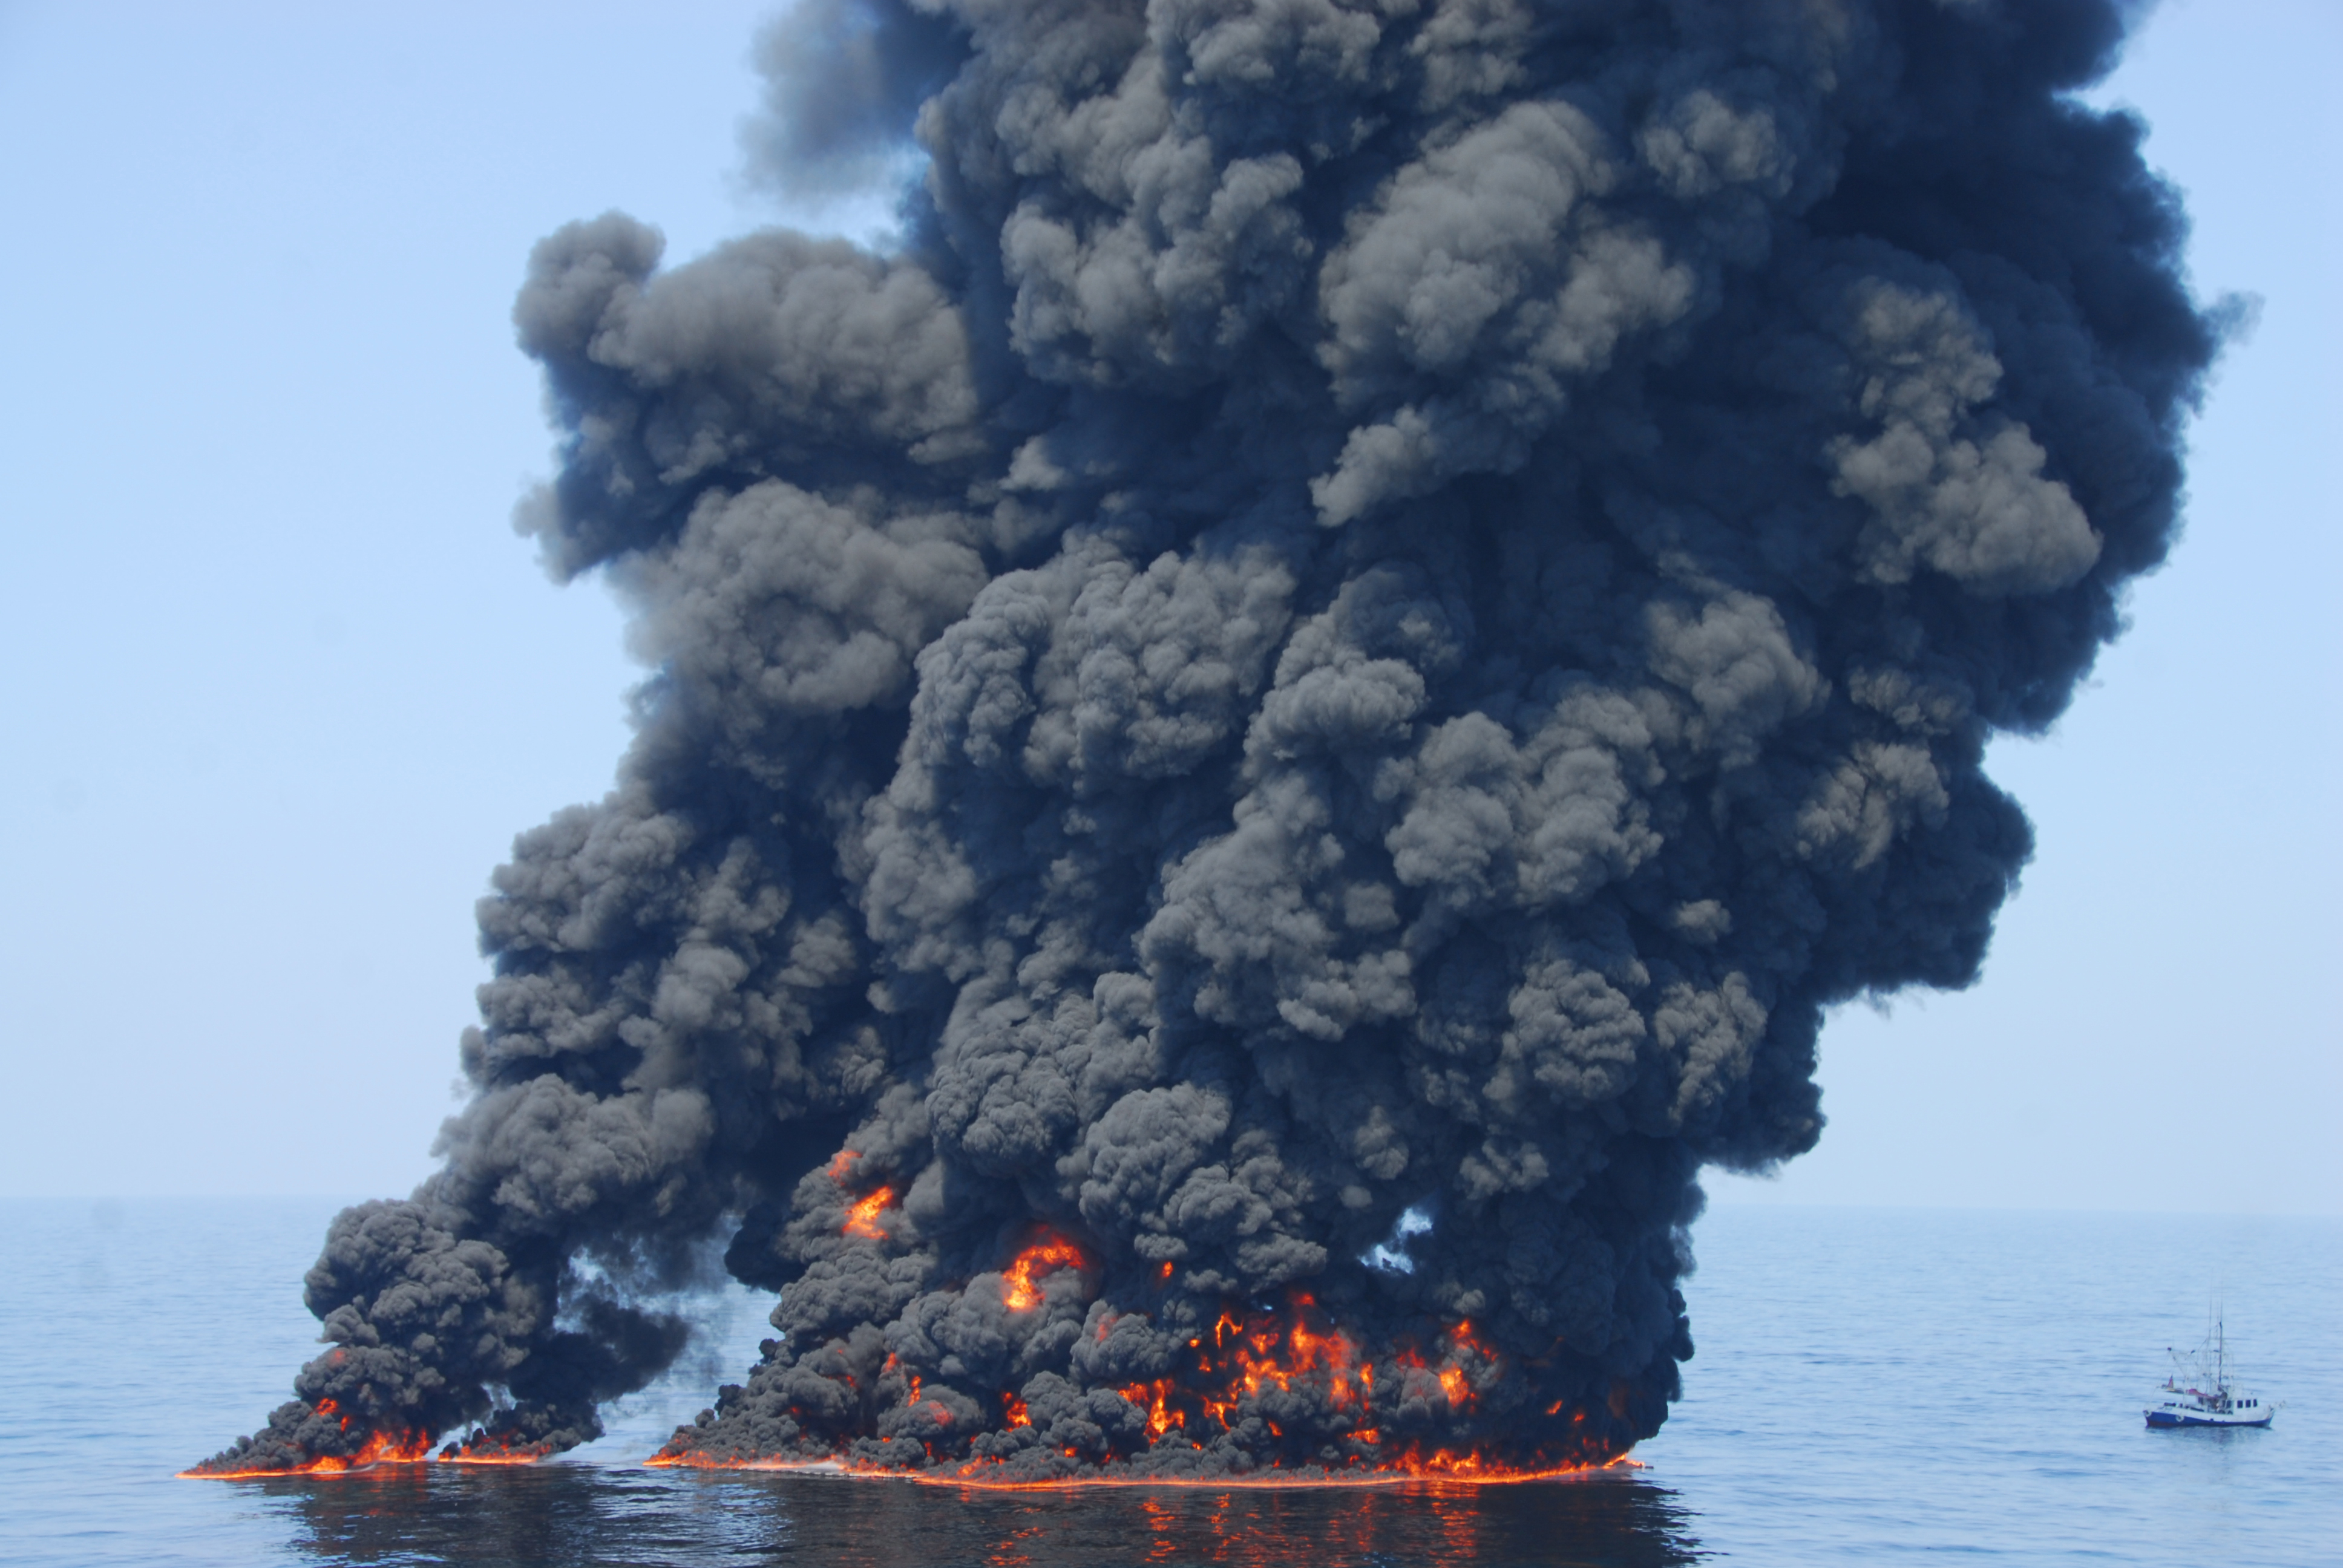 Черный дым что горит. Взрыв нефтяной платформы Deepwater Horizon - 20 апреля 2010 года. Deepwater Horizon разлив нефти. Разлив нефти в мексиканском заливе 2010. Разлив нефти BP Deepwater Horizon.